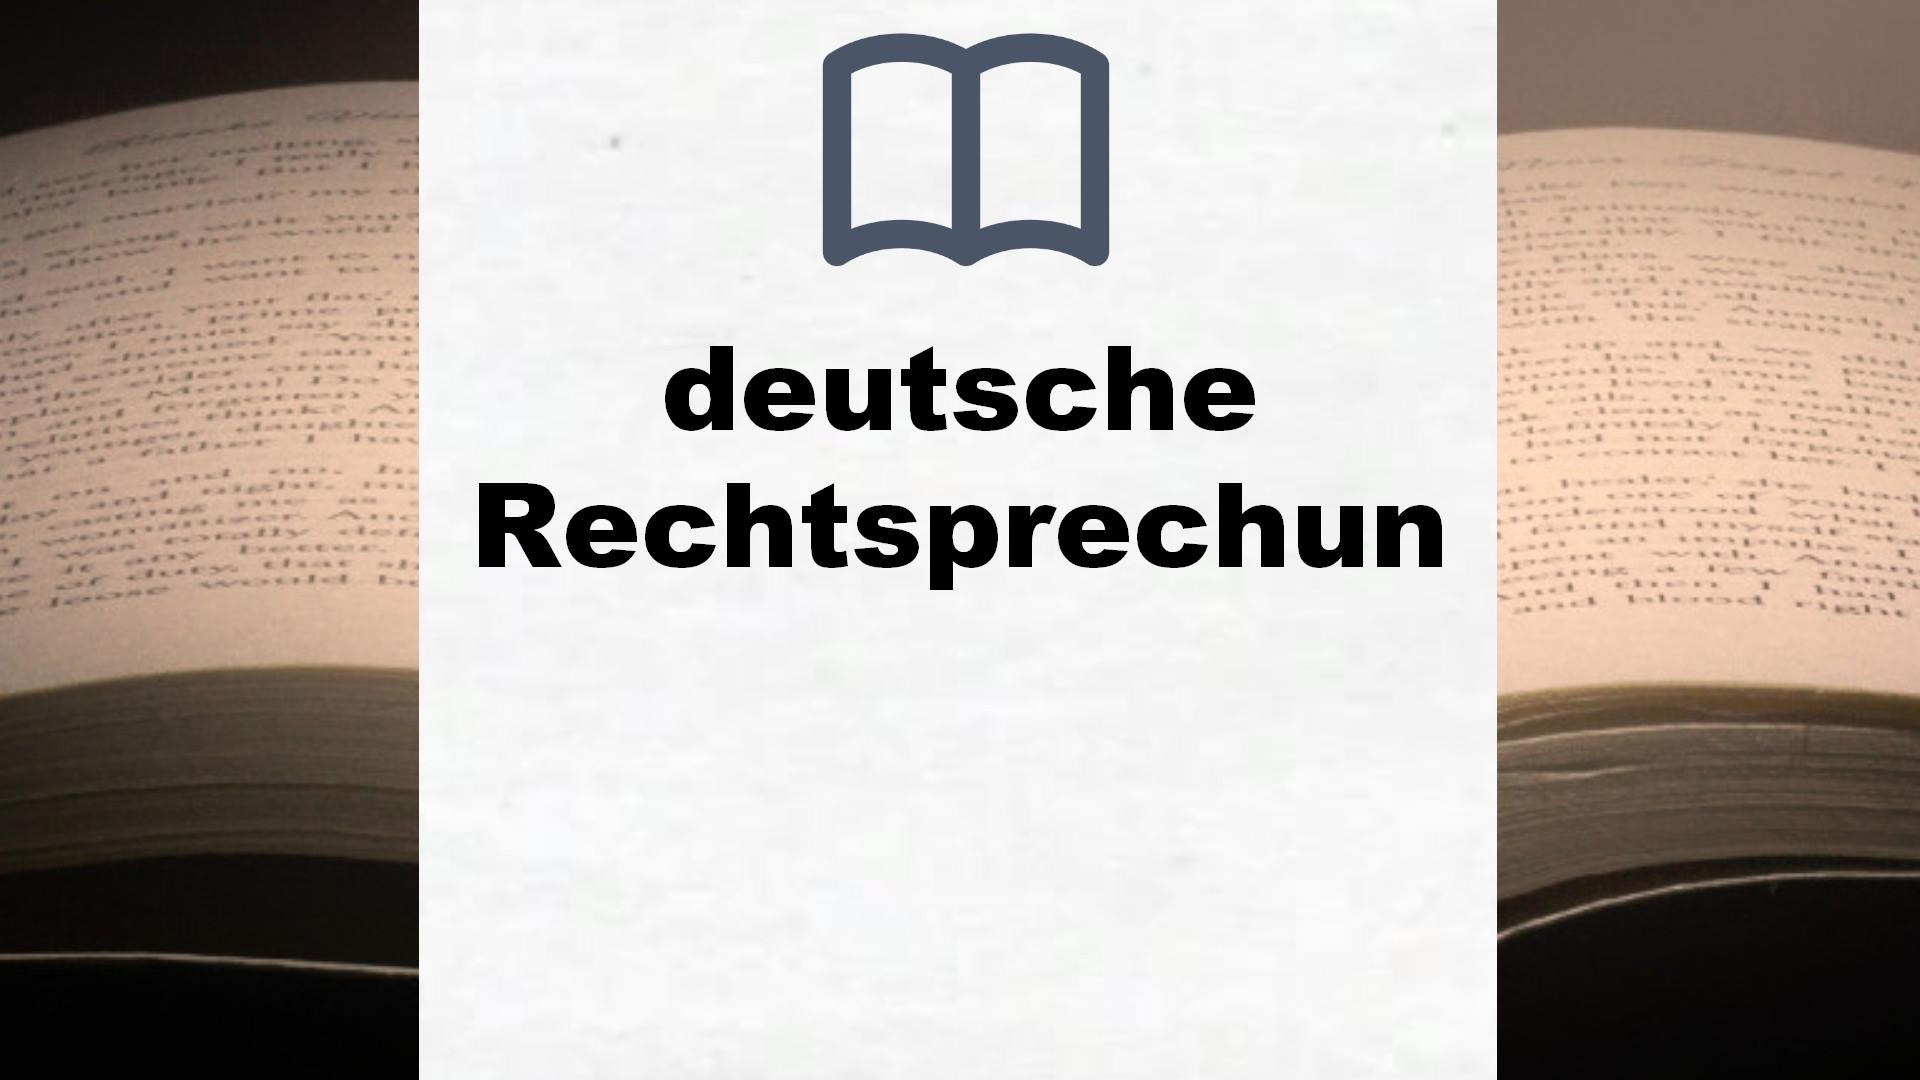 Bücher über deutsche Rechtsprechung